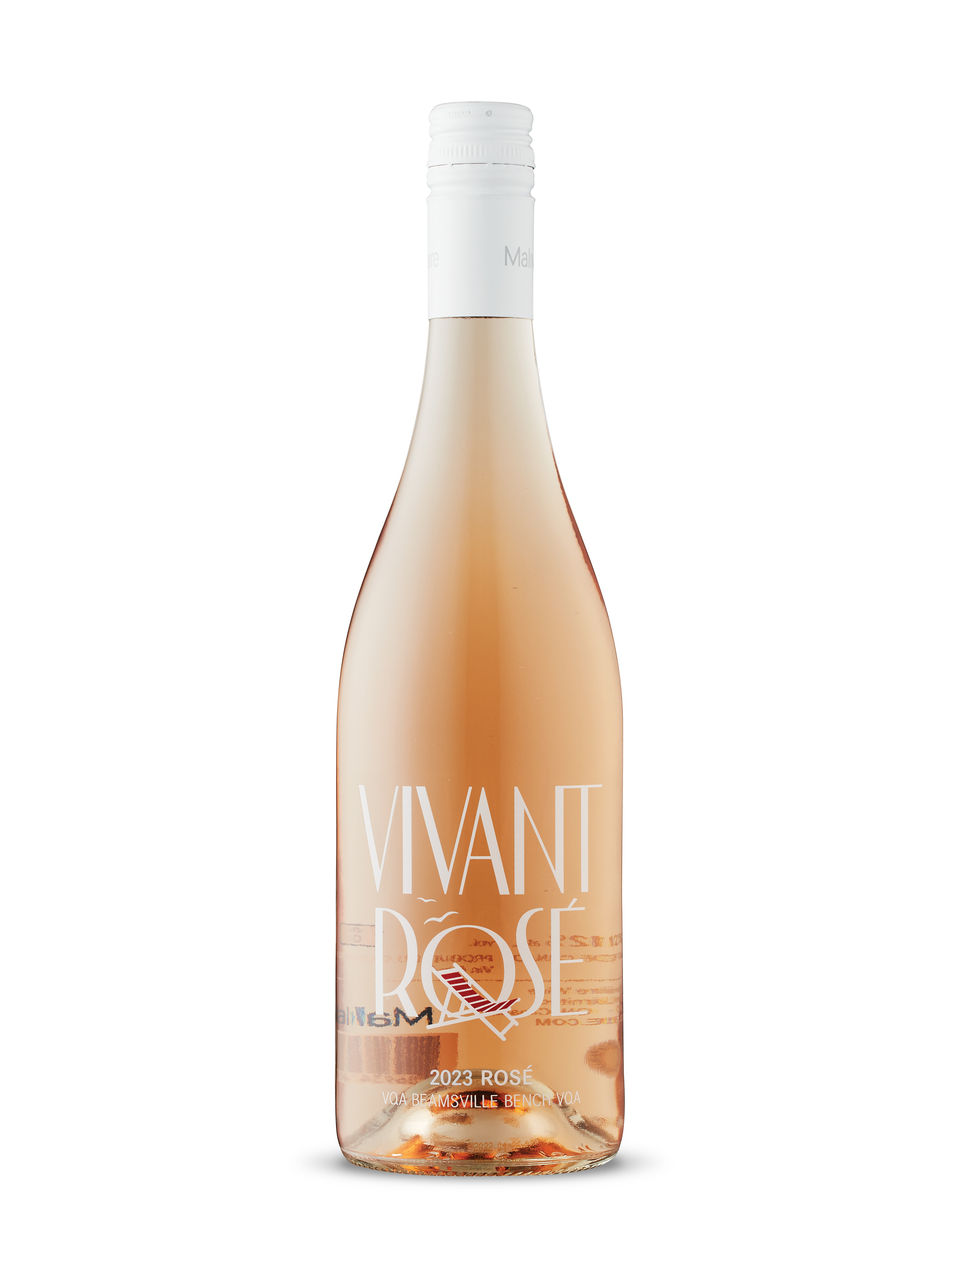 Malivoire Vivant Rosé 2021 - View Image 1